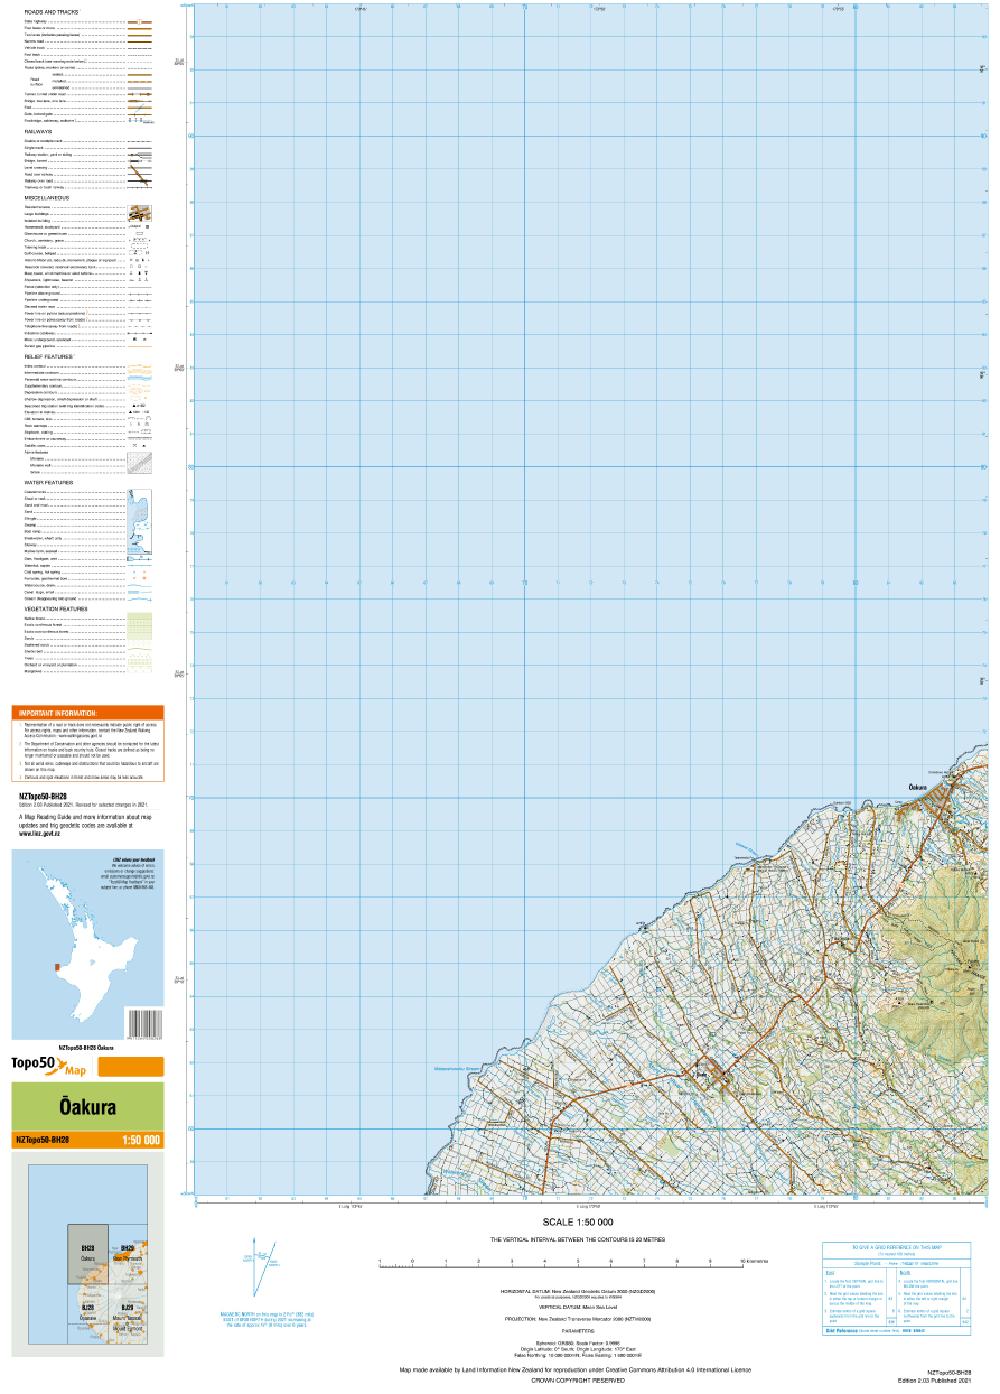 Topo map of Oakura